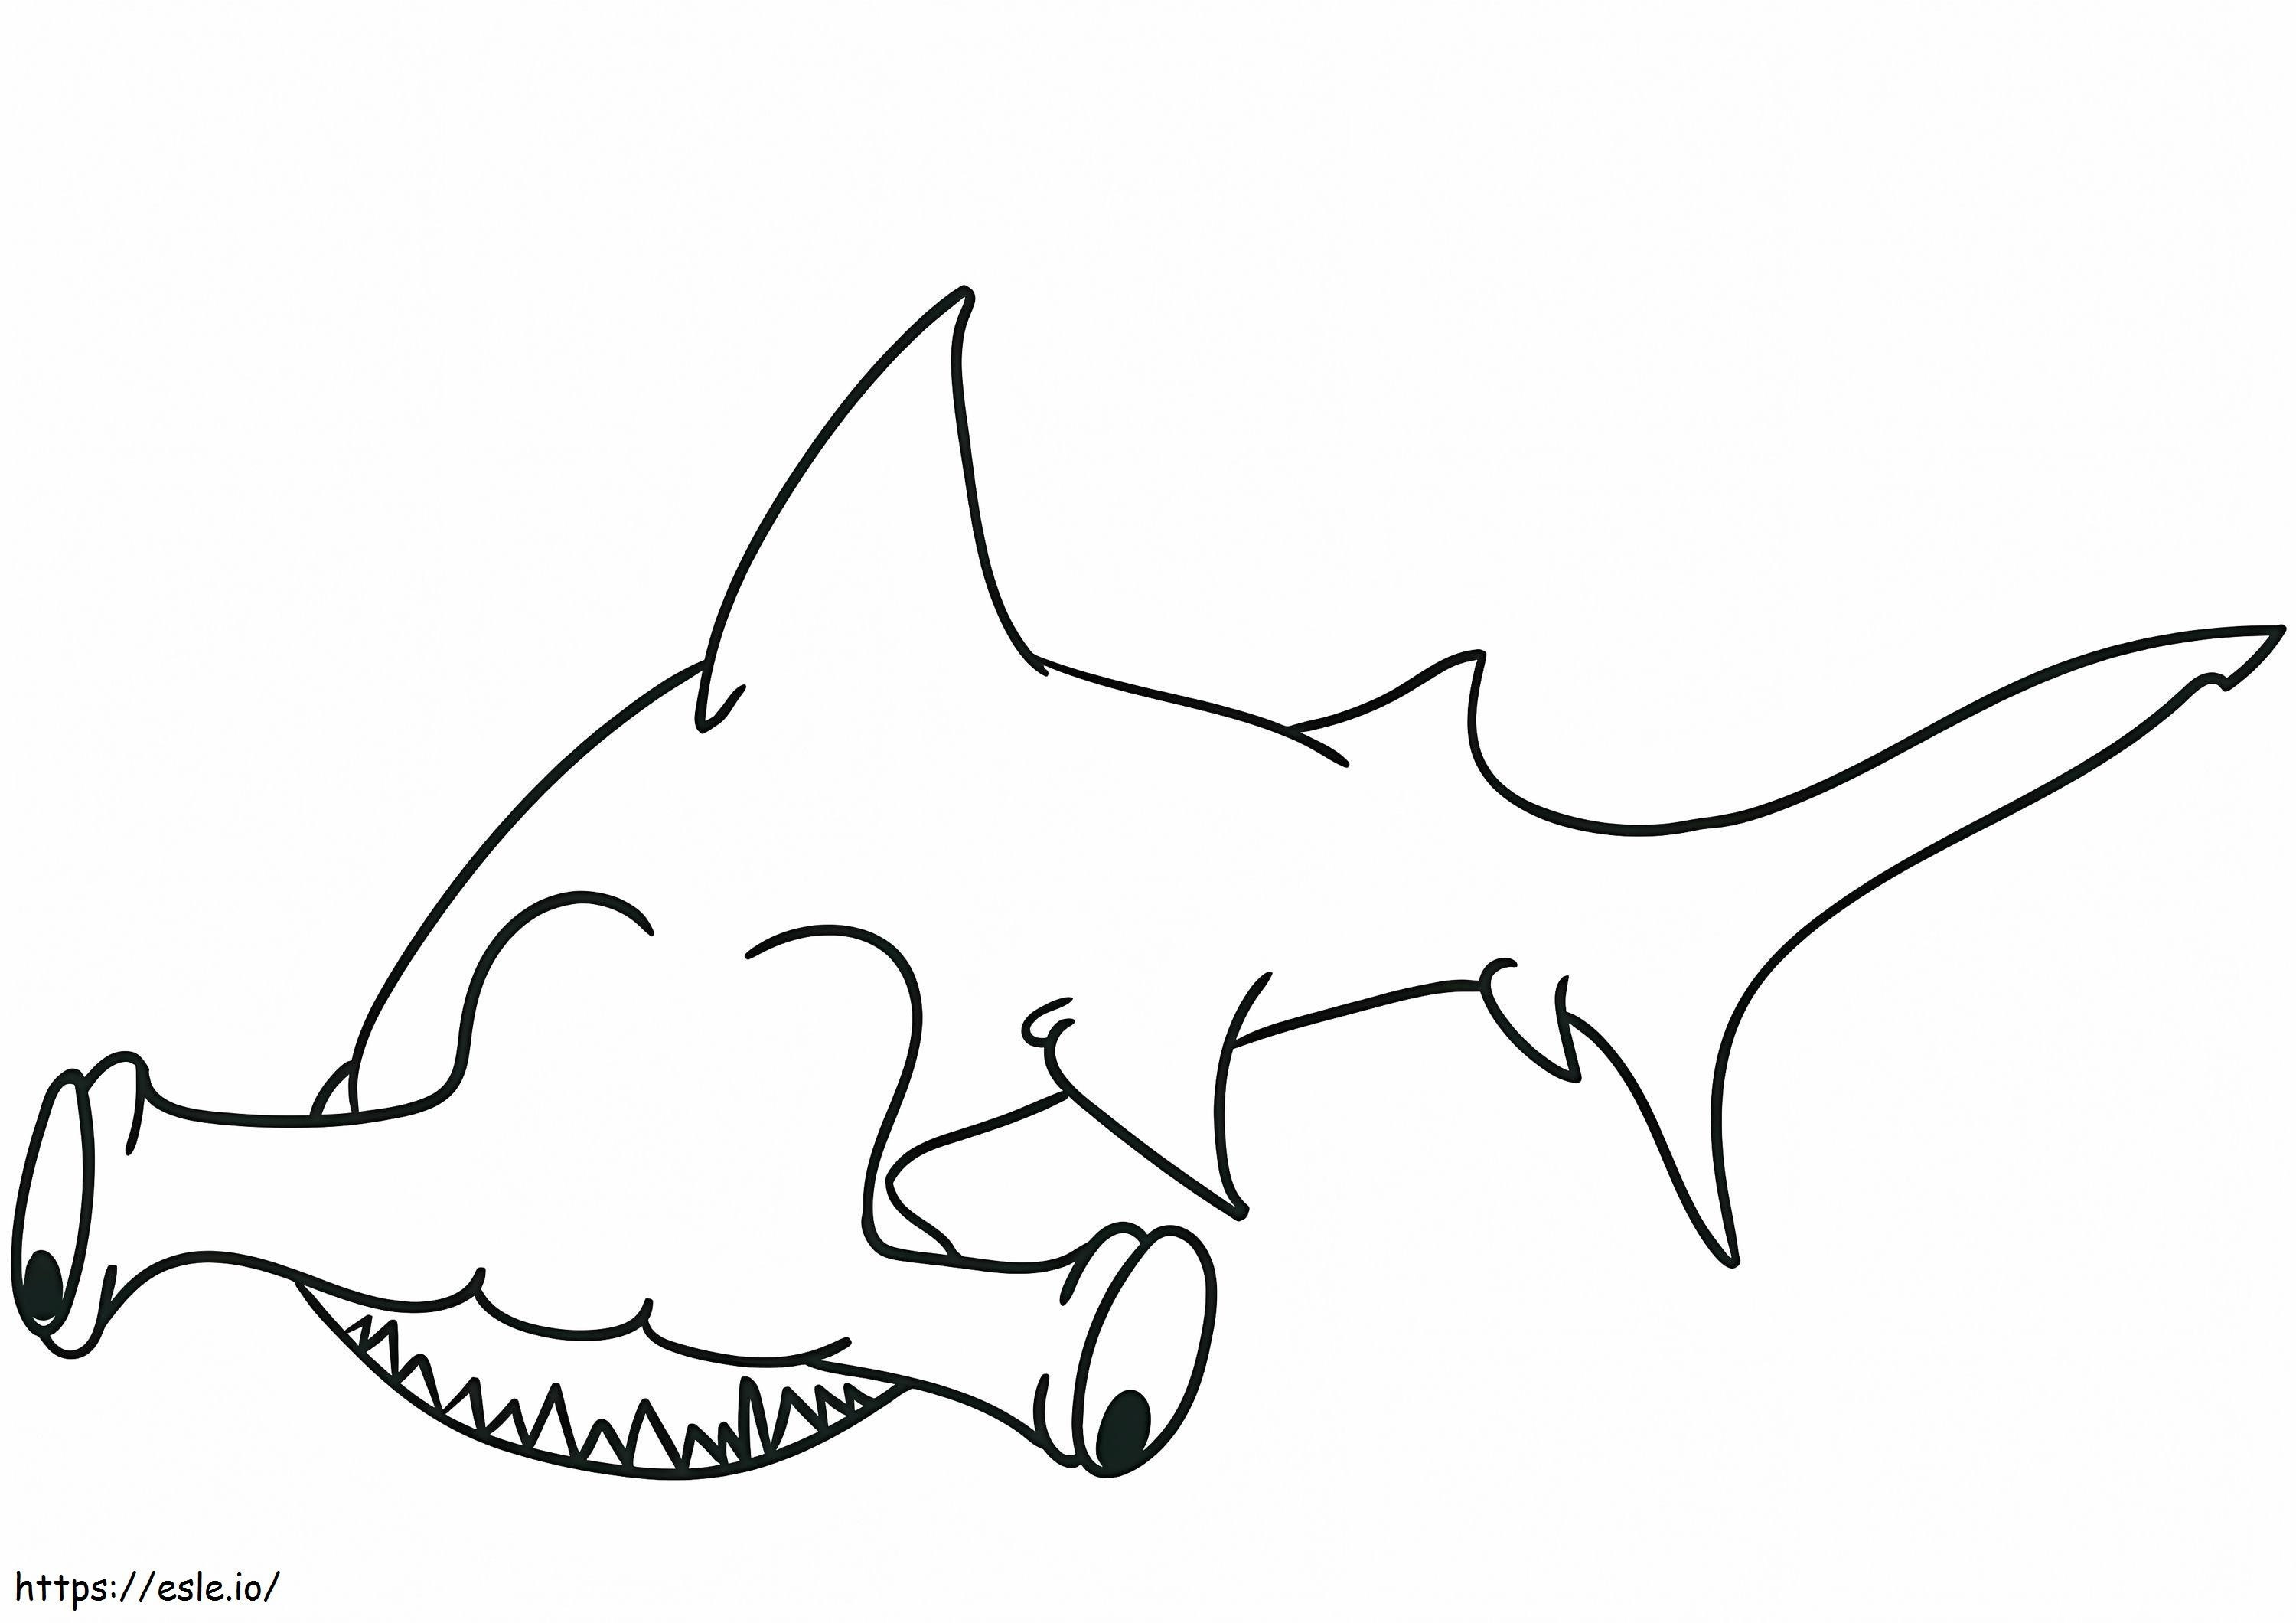 Tiburón martillo malvado para colorear